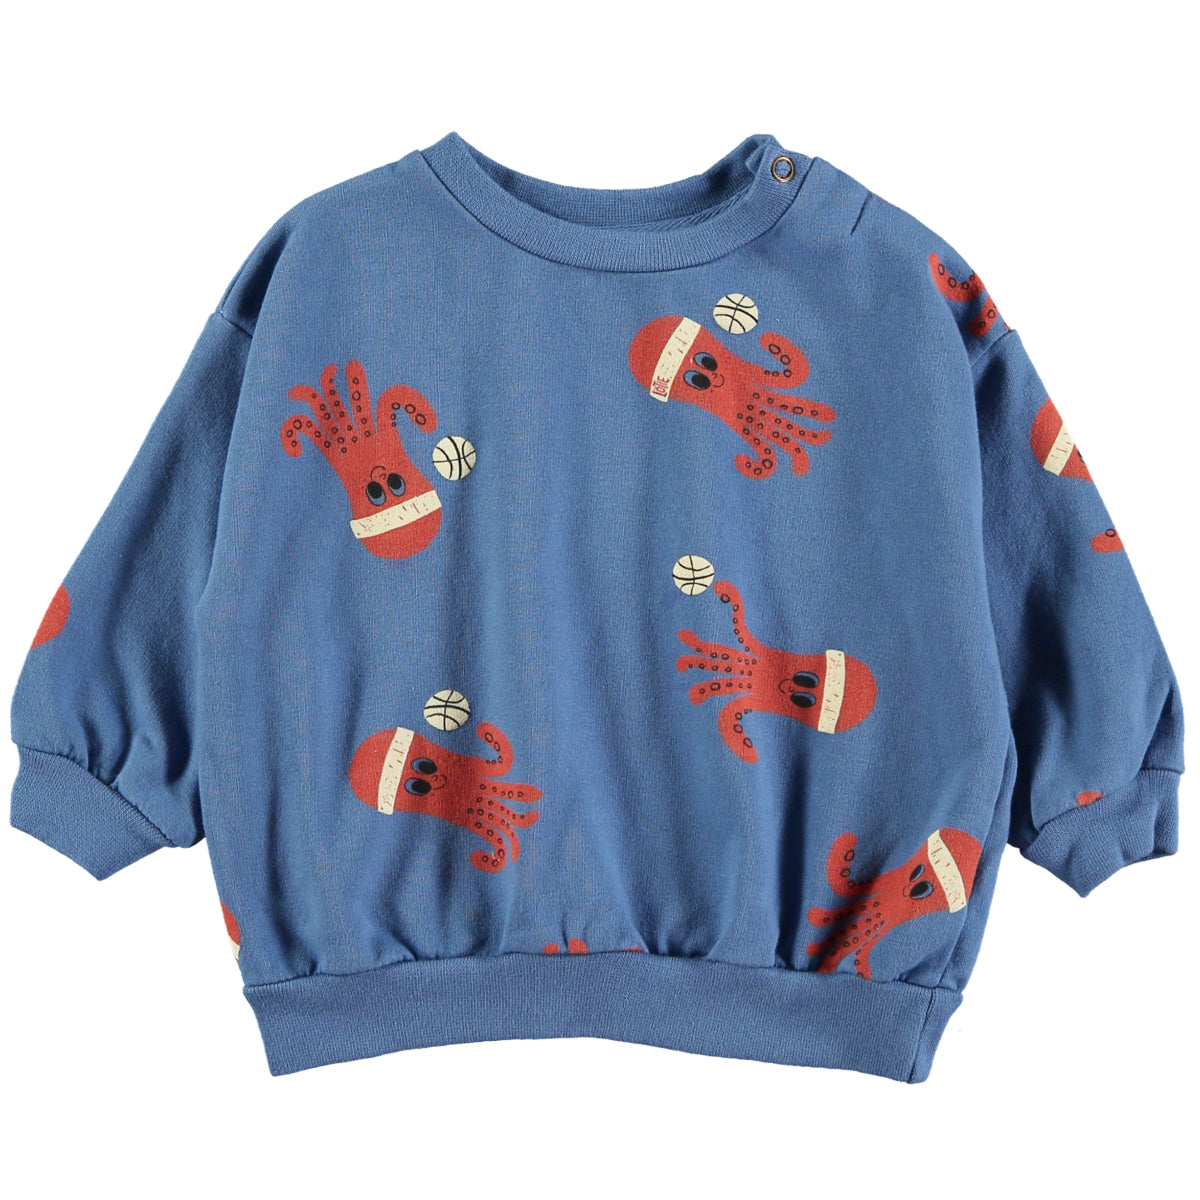 Lotie Kids - baby sweatshirt - octopuses - blue